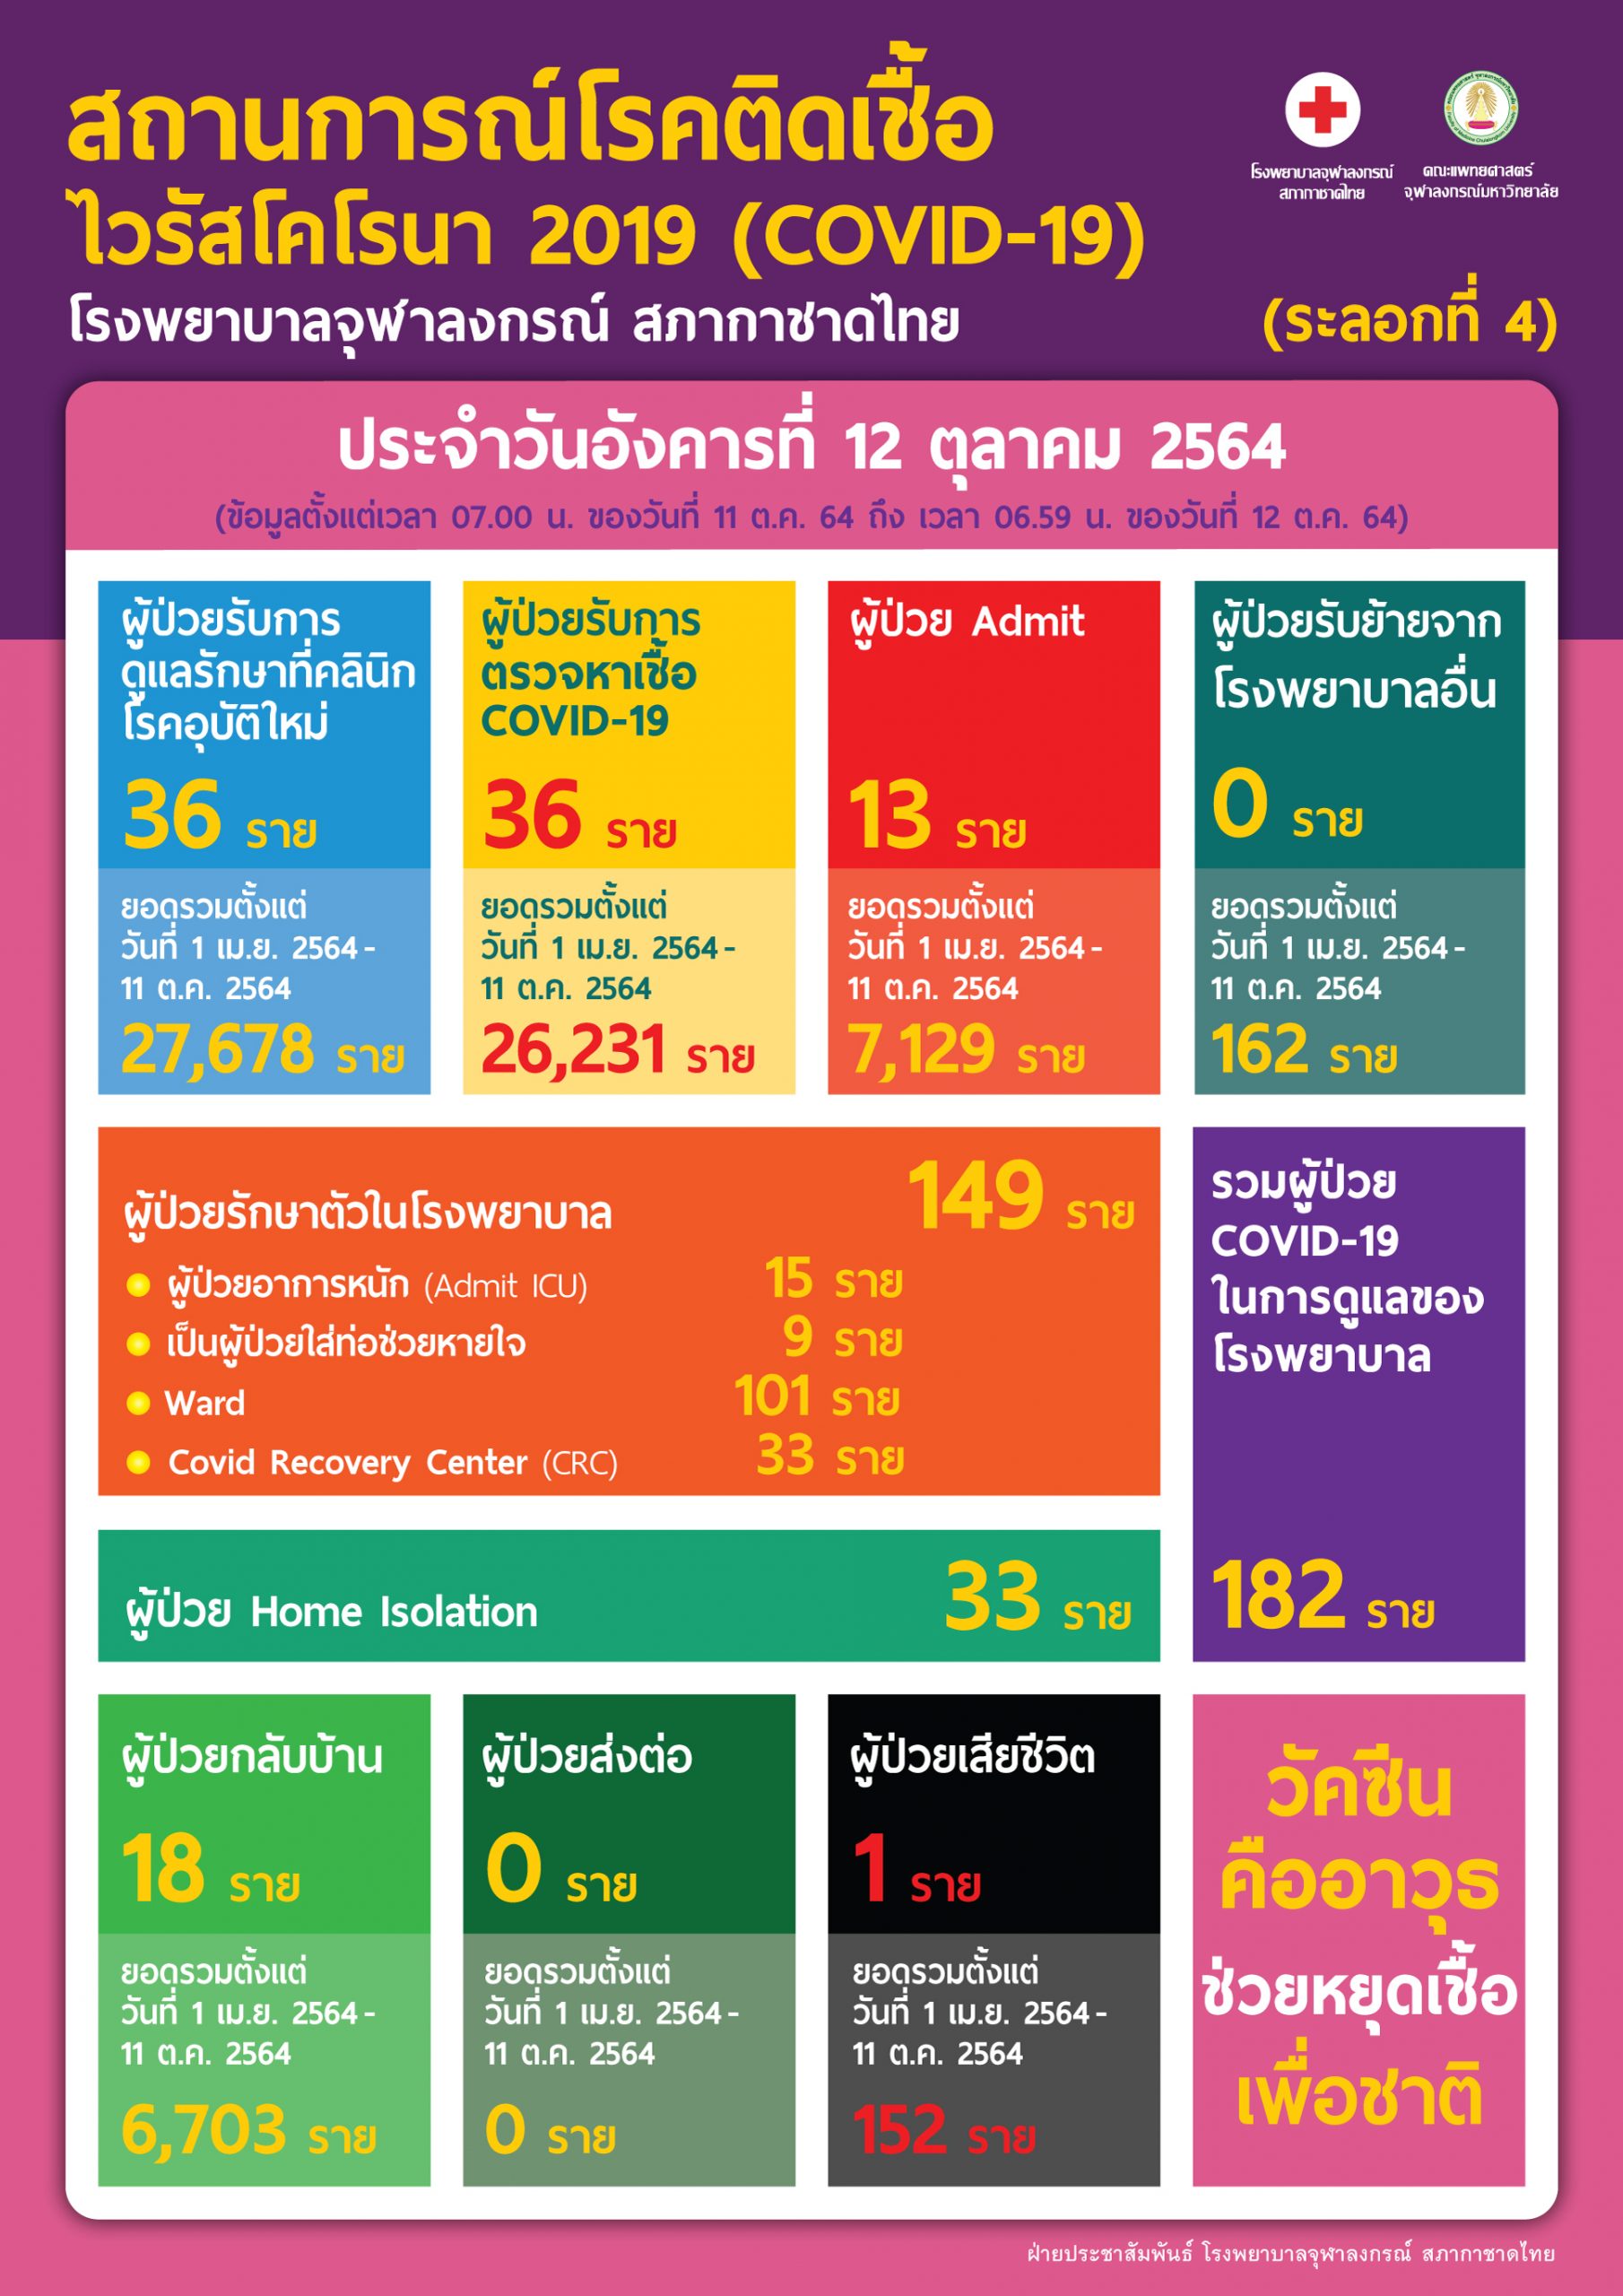 สถานการณ์โรคติดเชื้อไวรัสโคโรนา 2019 (COVID-19) (ระลอกที่ 4) โรงพยาบาลจุฬาลงกรณ์ สภากาชาดไทย ประจำวันอังคารที่ 12 ตุลาคม 2564